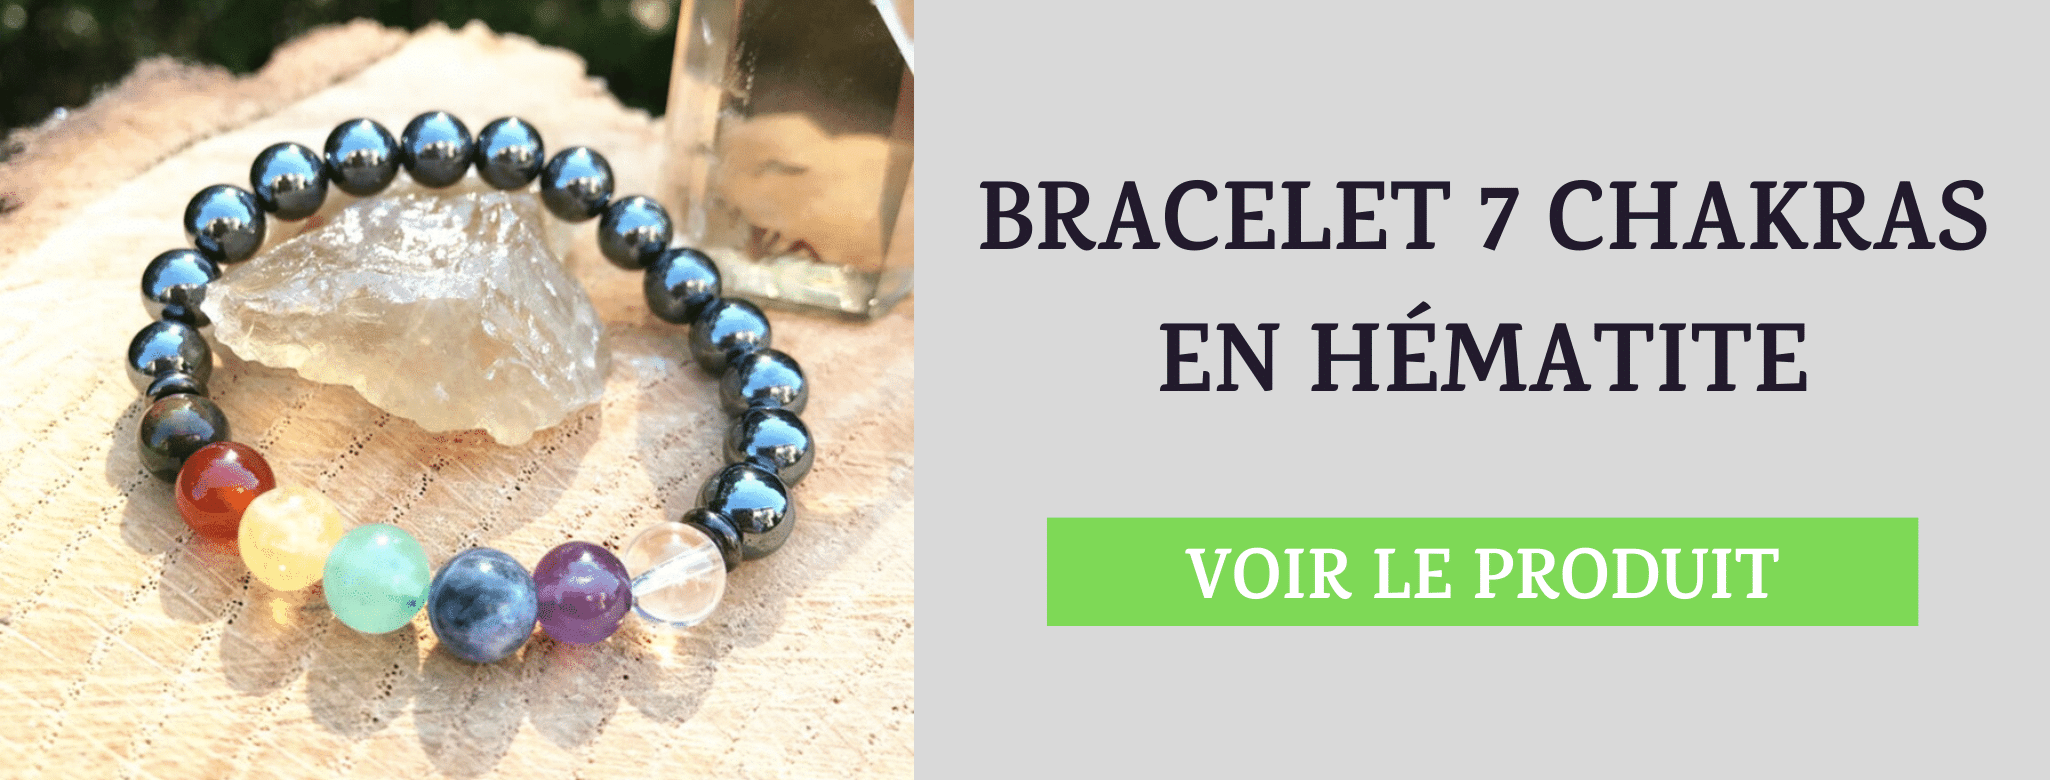 Bracelet 7 Chakras Hématite